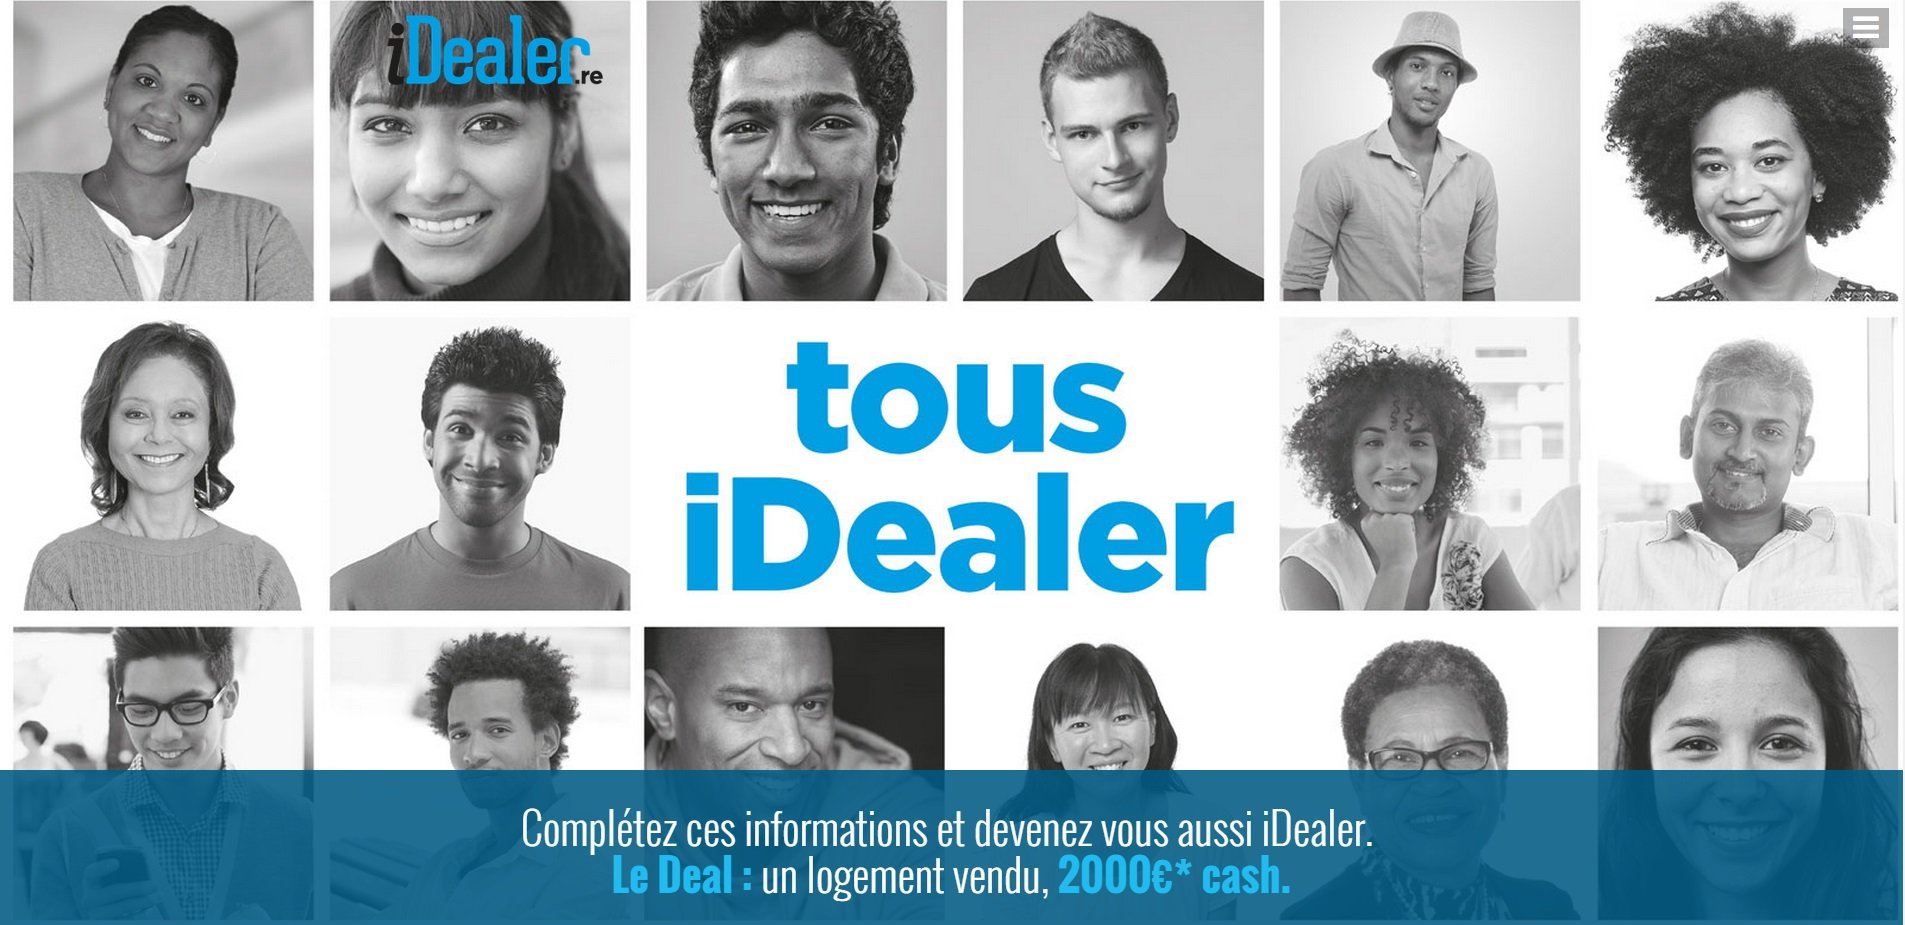 iDealer : 2000€ pour un logement vendu à la Réunion